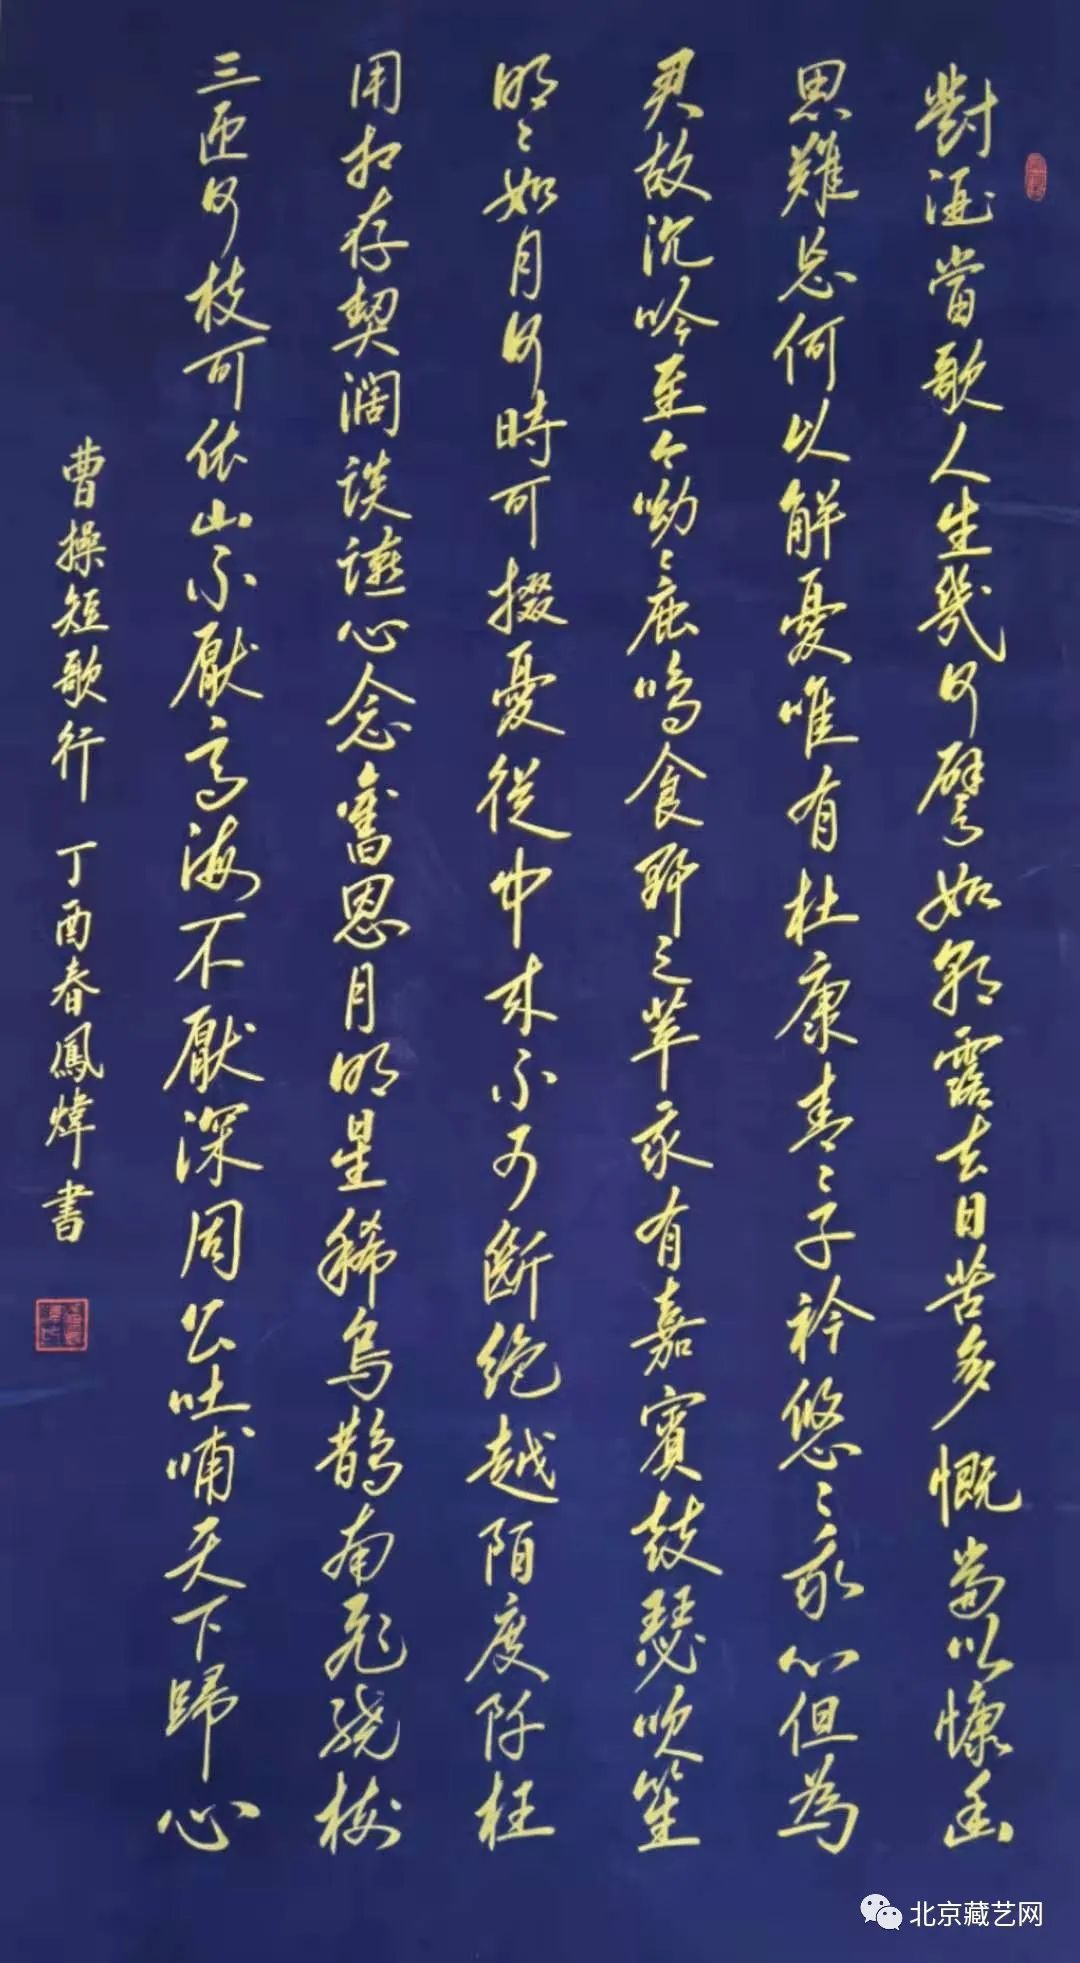 潘文伟(「新时代书画代表人物·潘文伟」献礼建党100周年作品展)